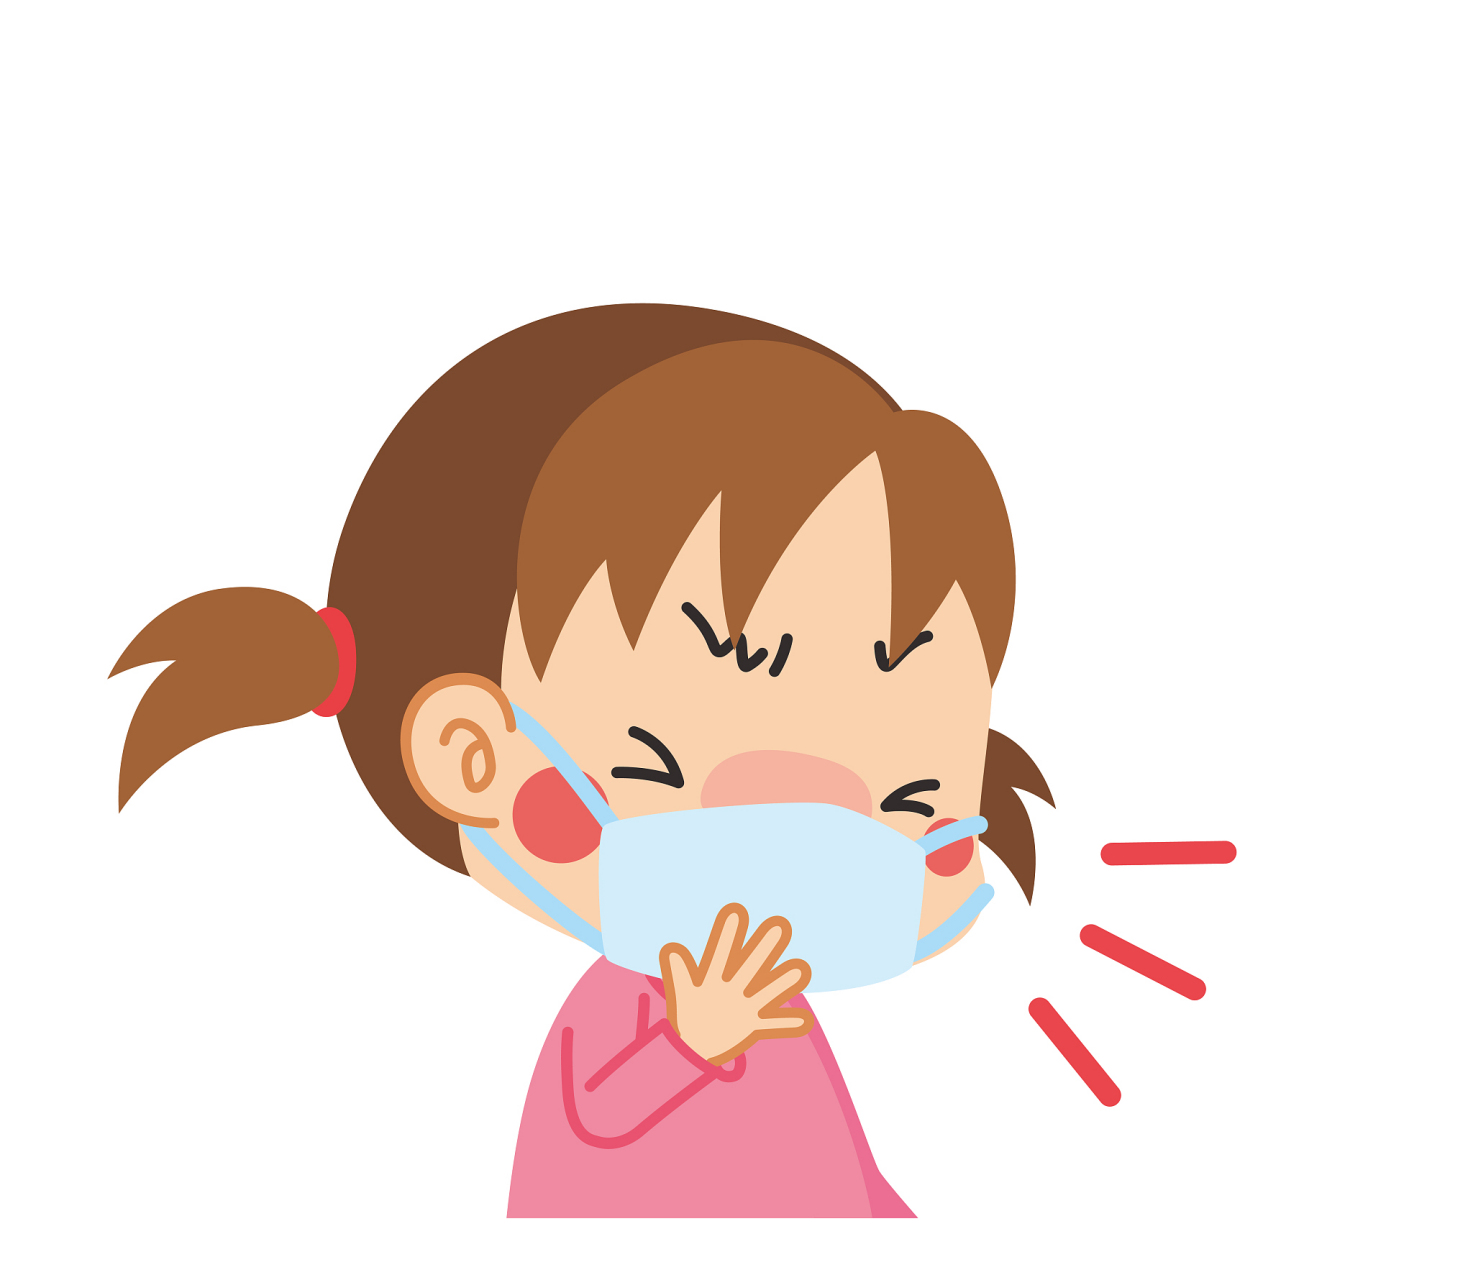 1,感冒是一种自限性疾病,如果症状比较轻,一般不用药治疗;  2,感冒